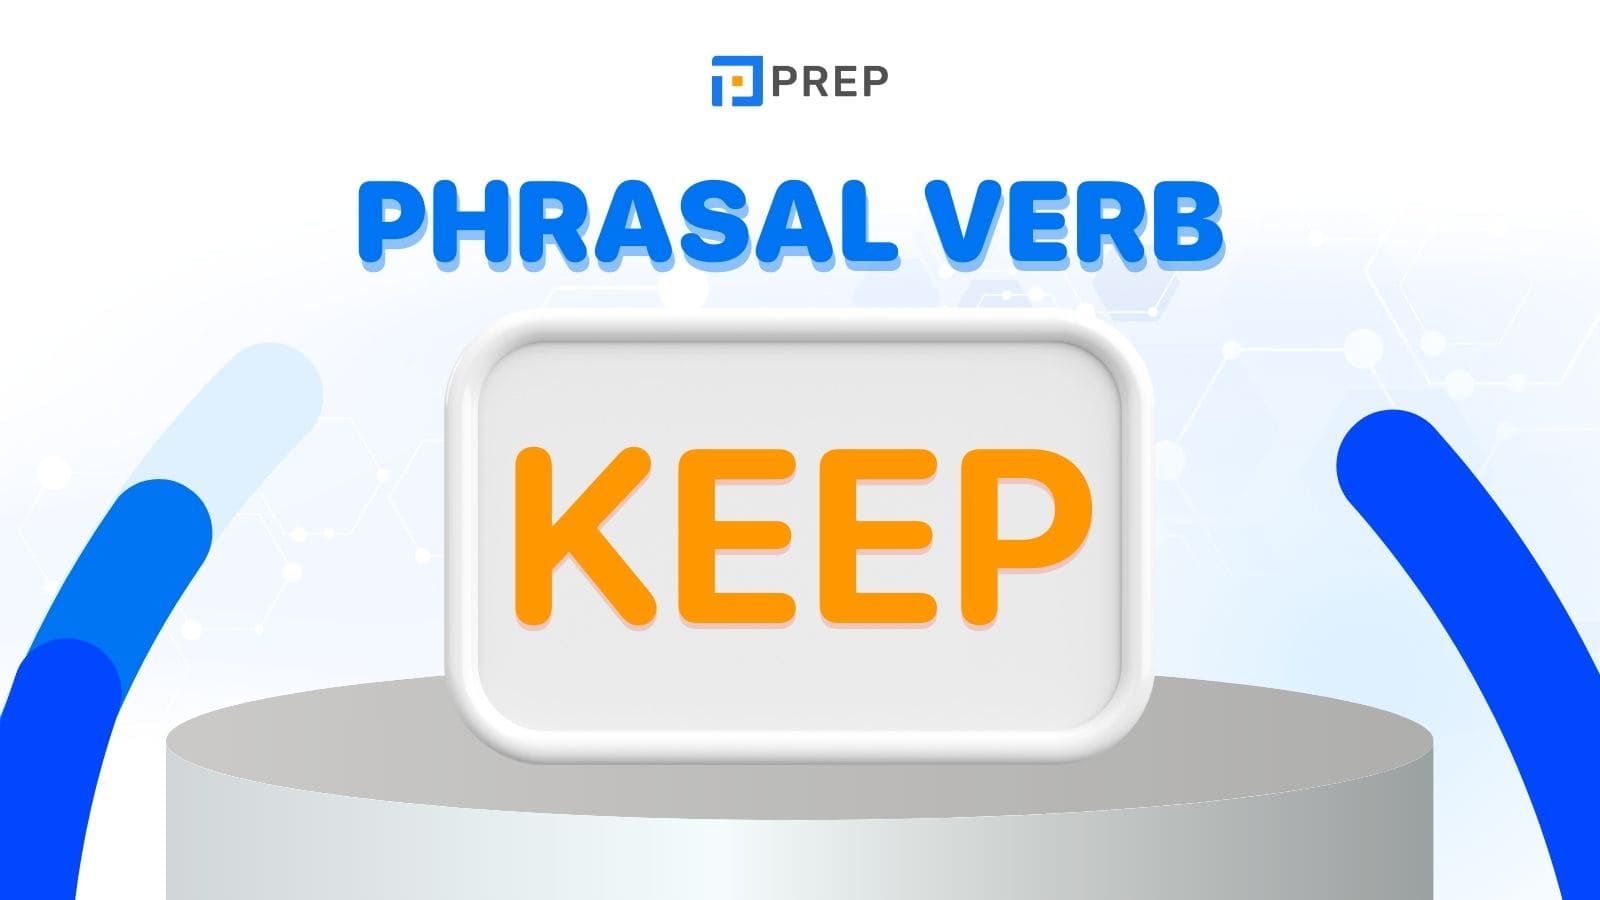 phrasal-verb-keep.jpg